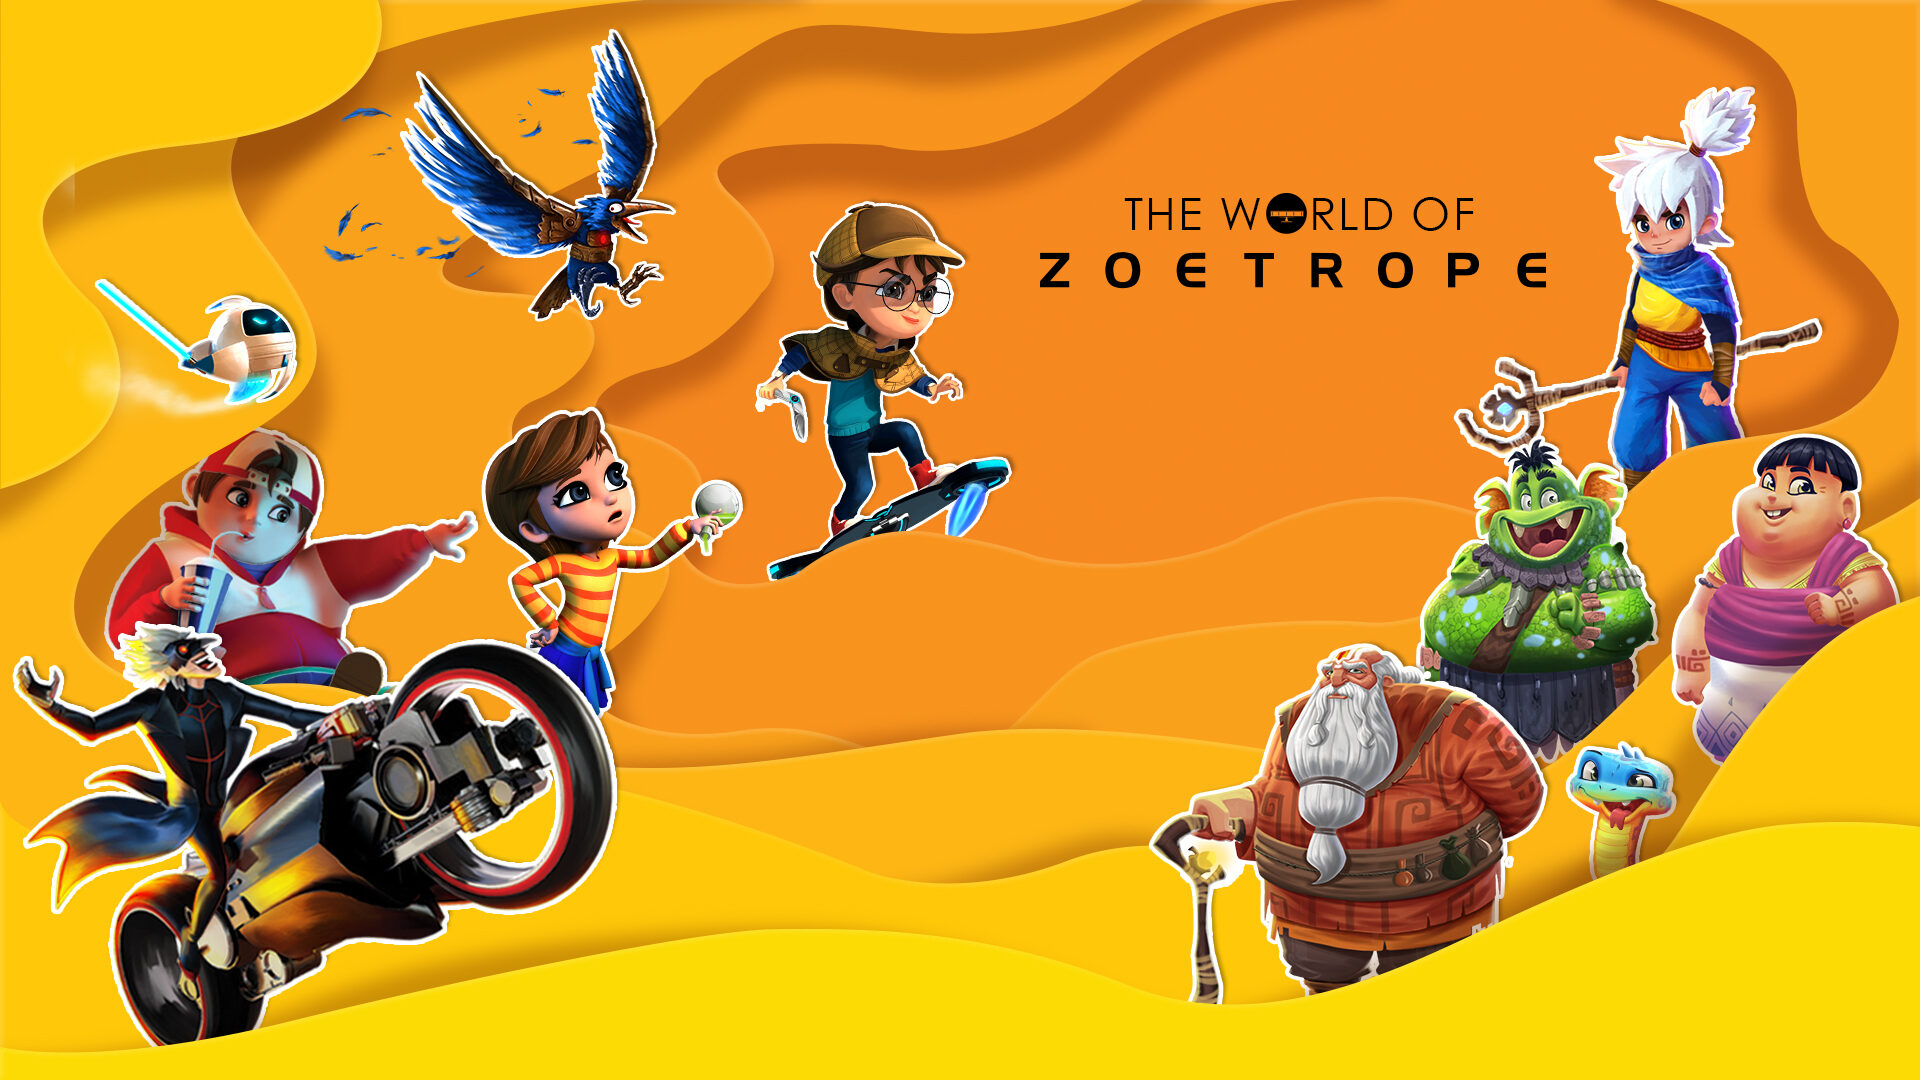 Zoetrope Animation Studios